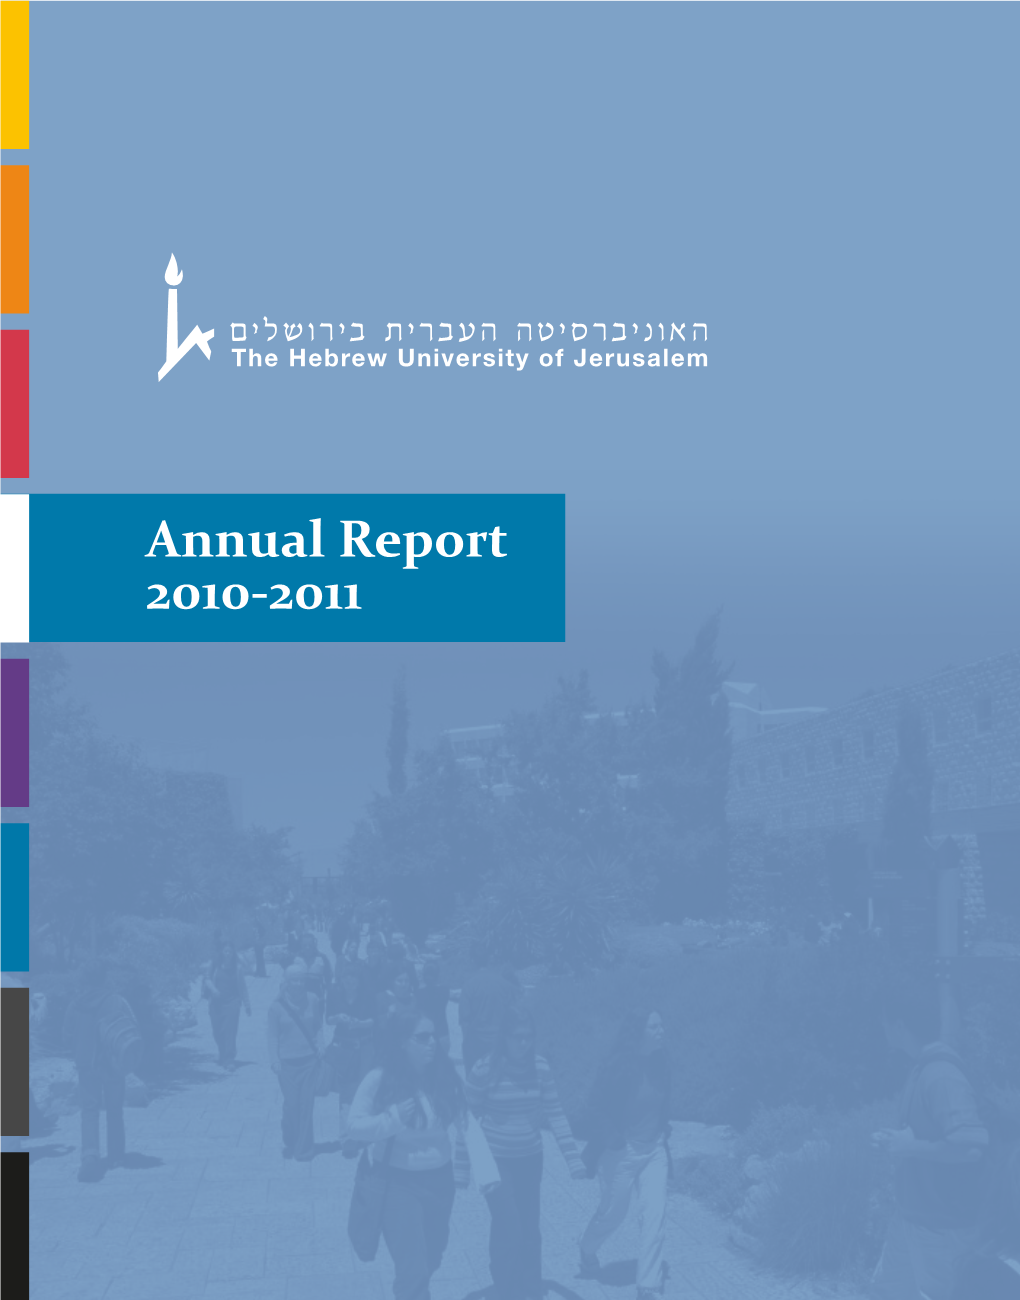 Annual Report 2010-2011 Annual Report 2010-2011 a N N U a L R E P O R T 1